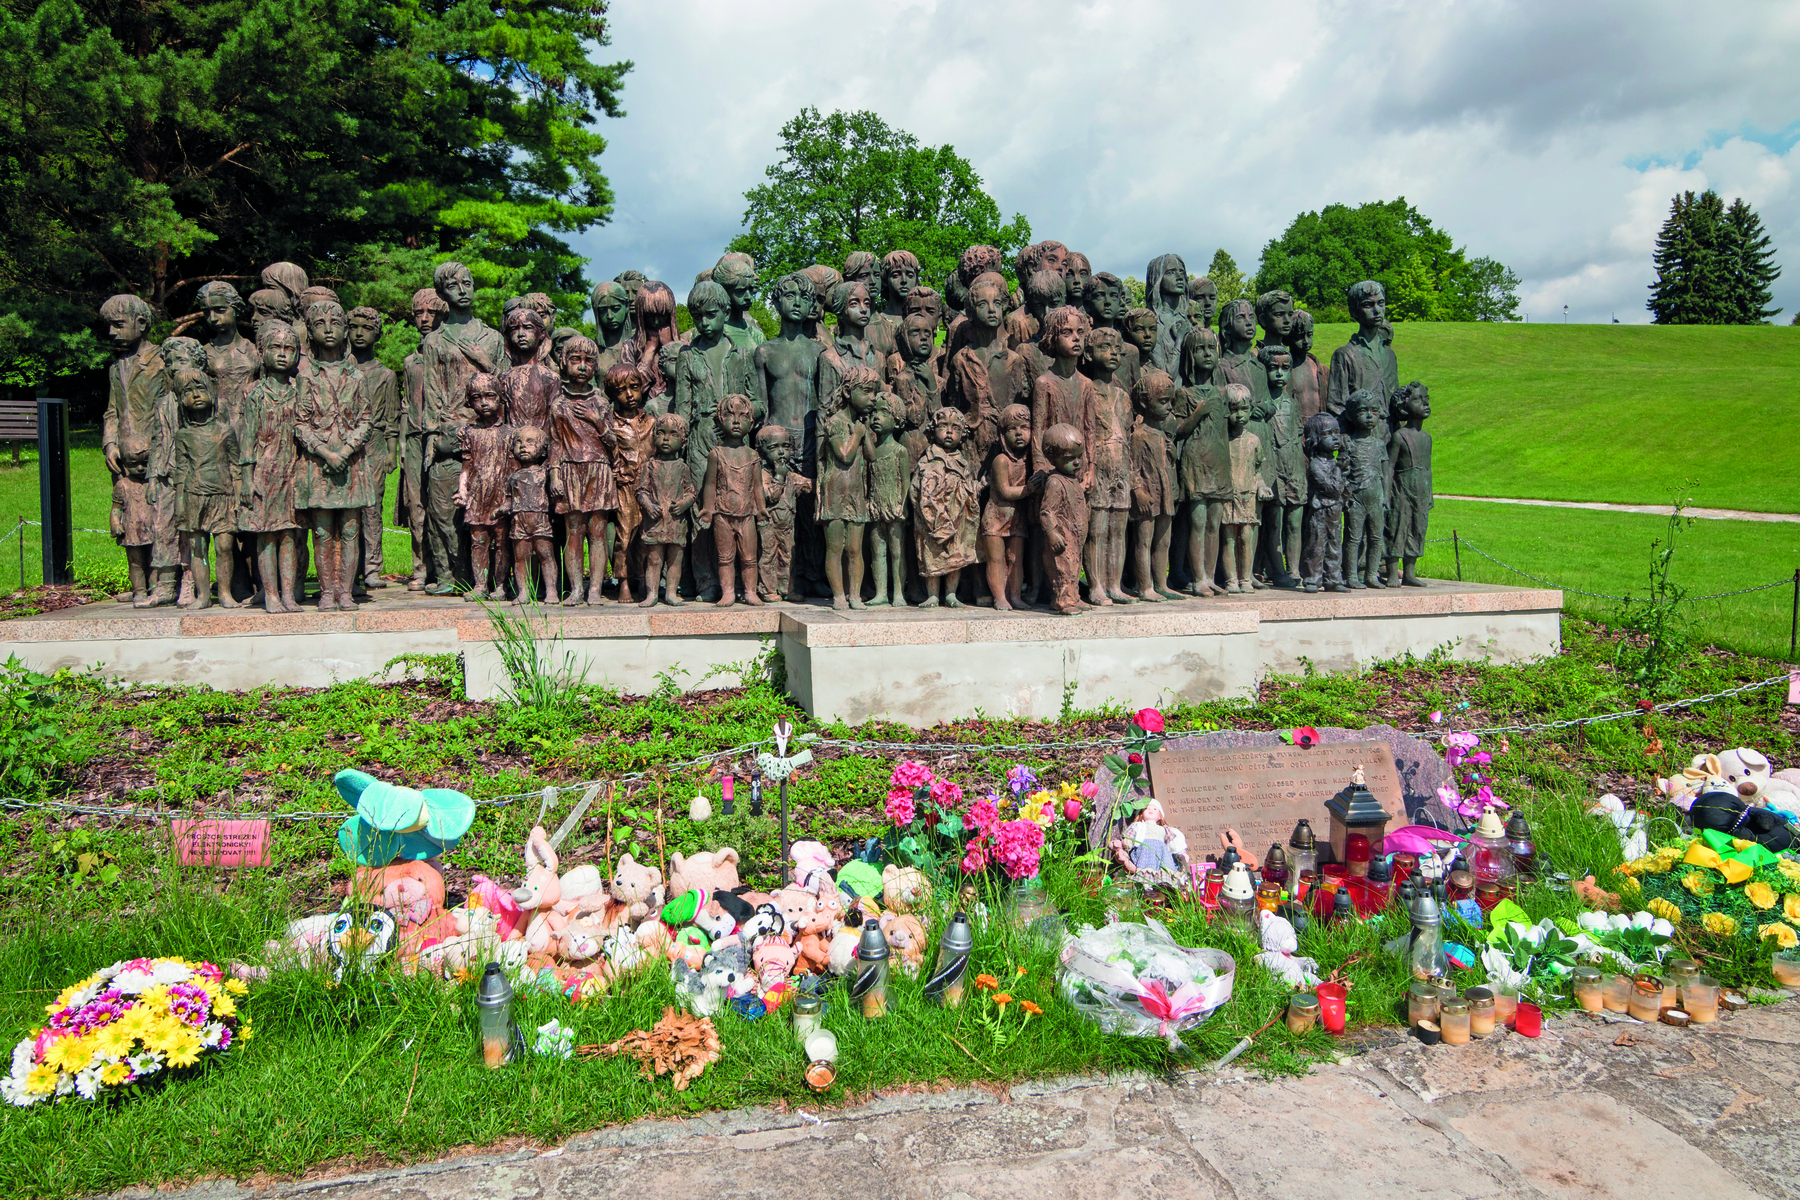 Fotografia. Monumento de bronze em um campo gramado, composto por diversas estátuas de crianças, de idades variadas. À frente do monumento, flores, pelúcias e velas.